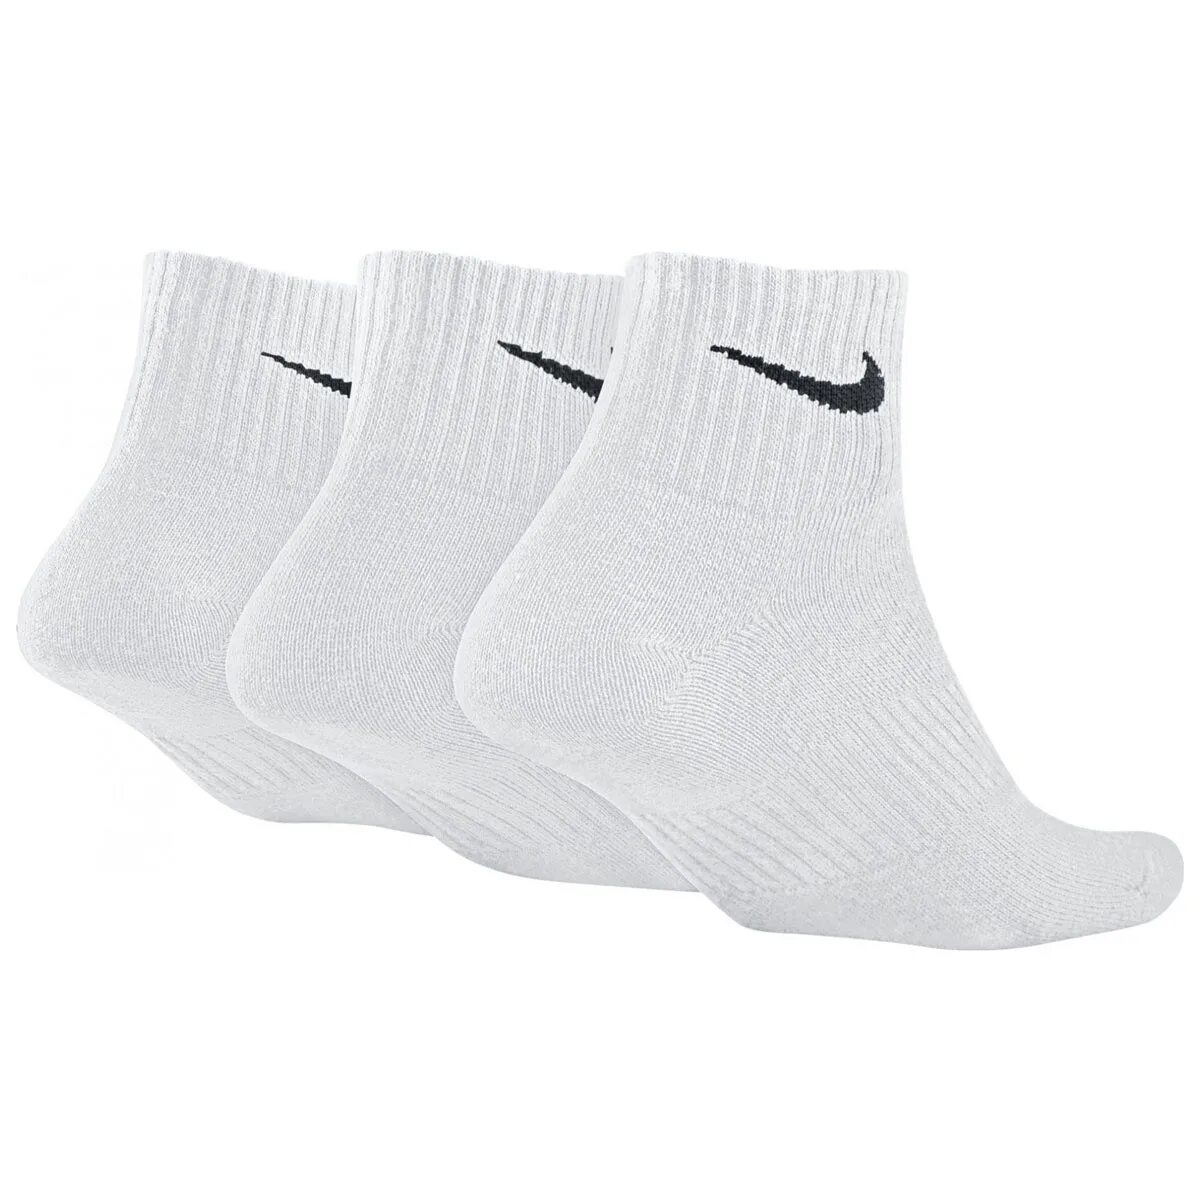 Носки Nike Elite Lightweight Quarter Running Socks. Оригинальные носки Nike Performance Lightweight. Носки Nike Swoosh. Футбольные носки найк белые. Купить носки найк оригинал